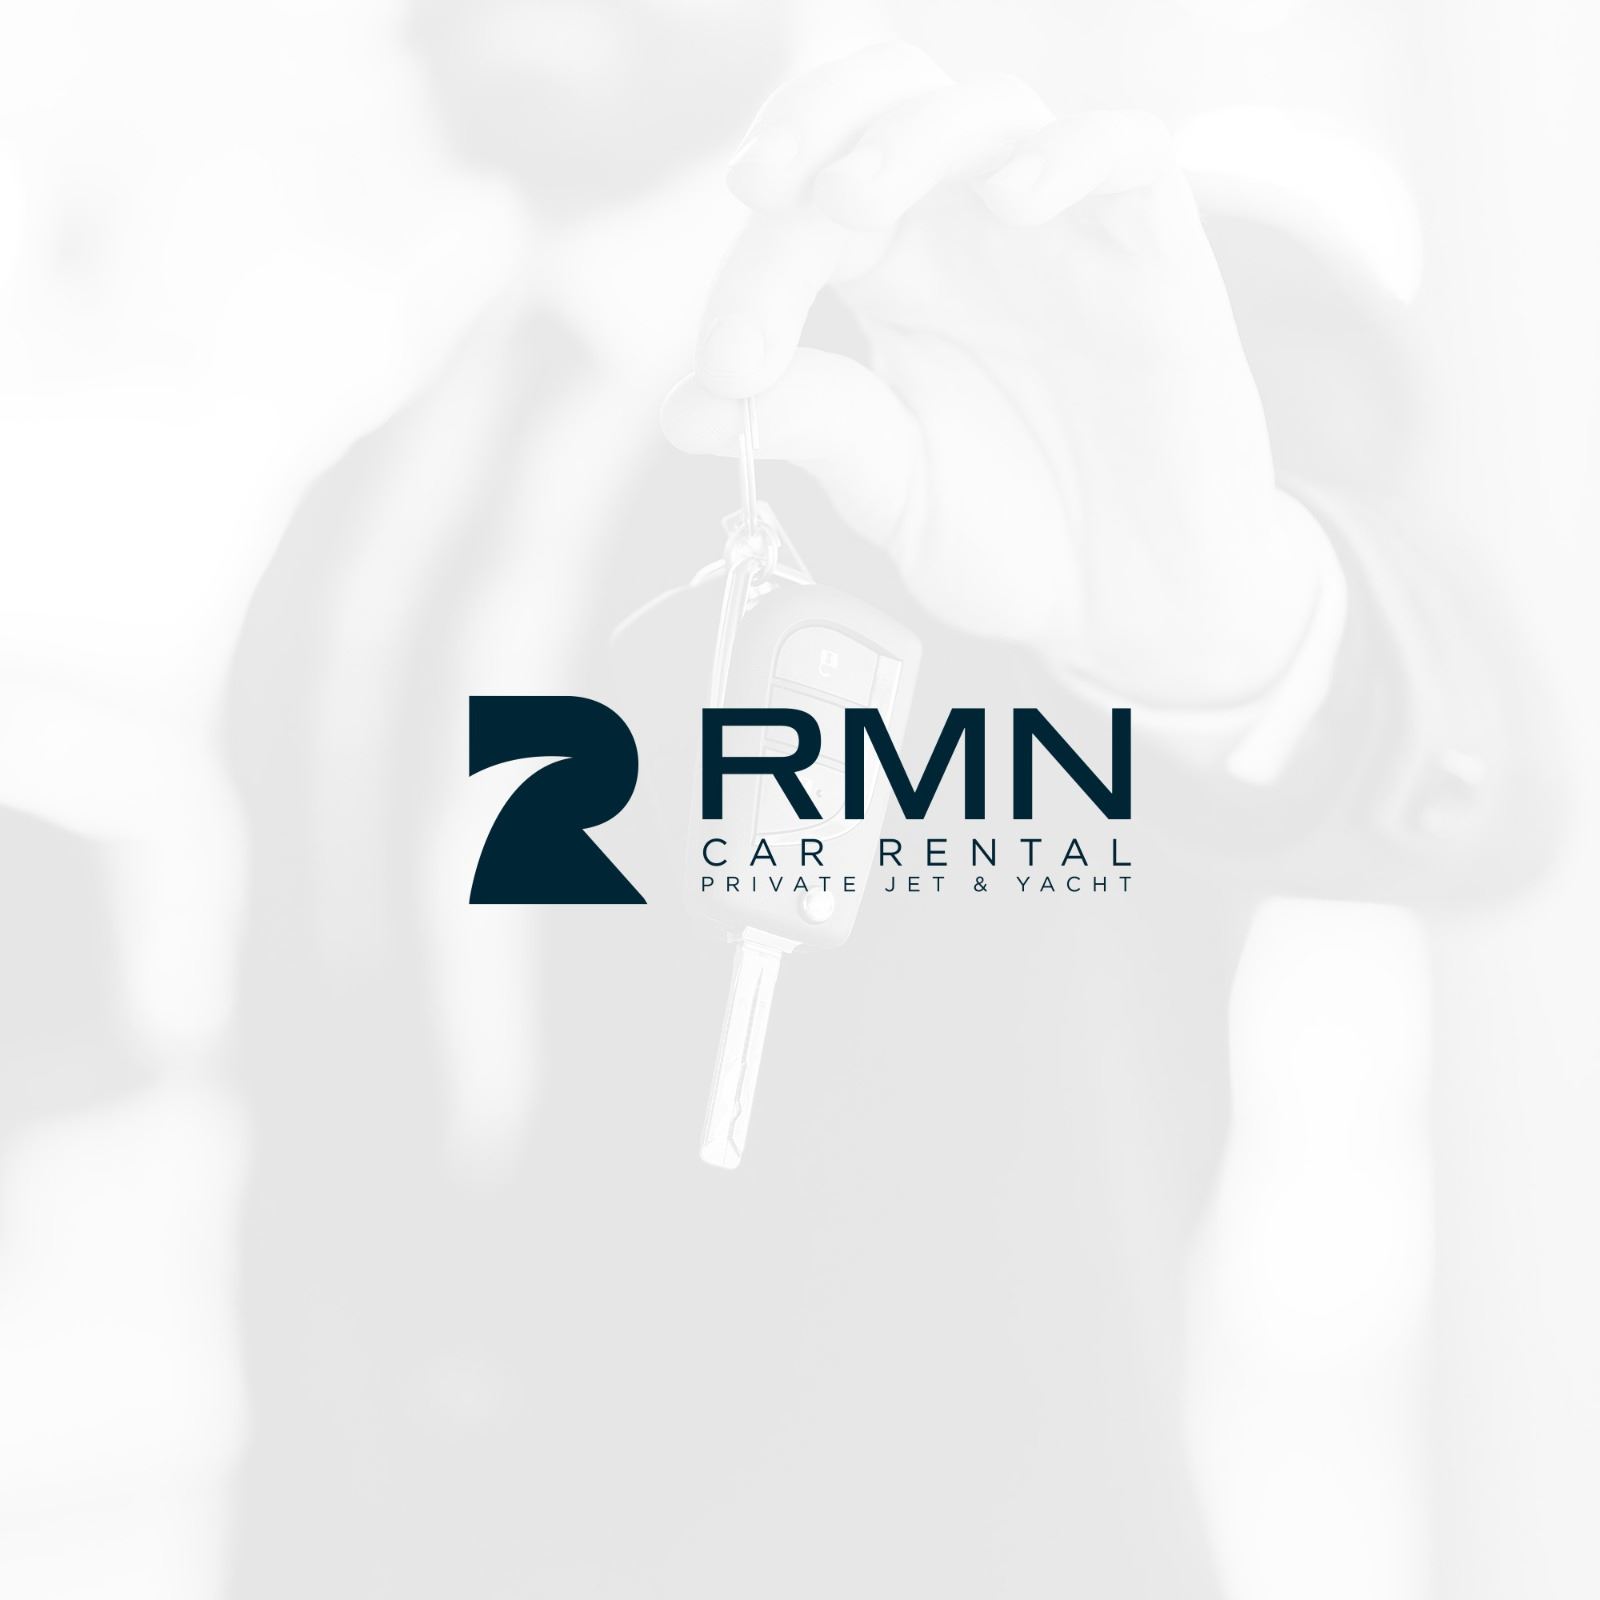 RMN Car Rental Sosyal Medya Yönetimi